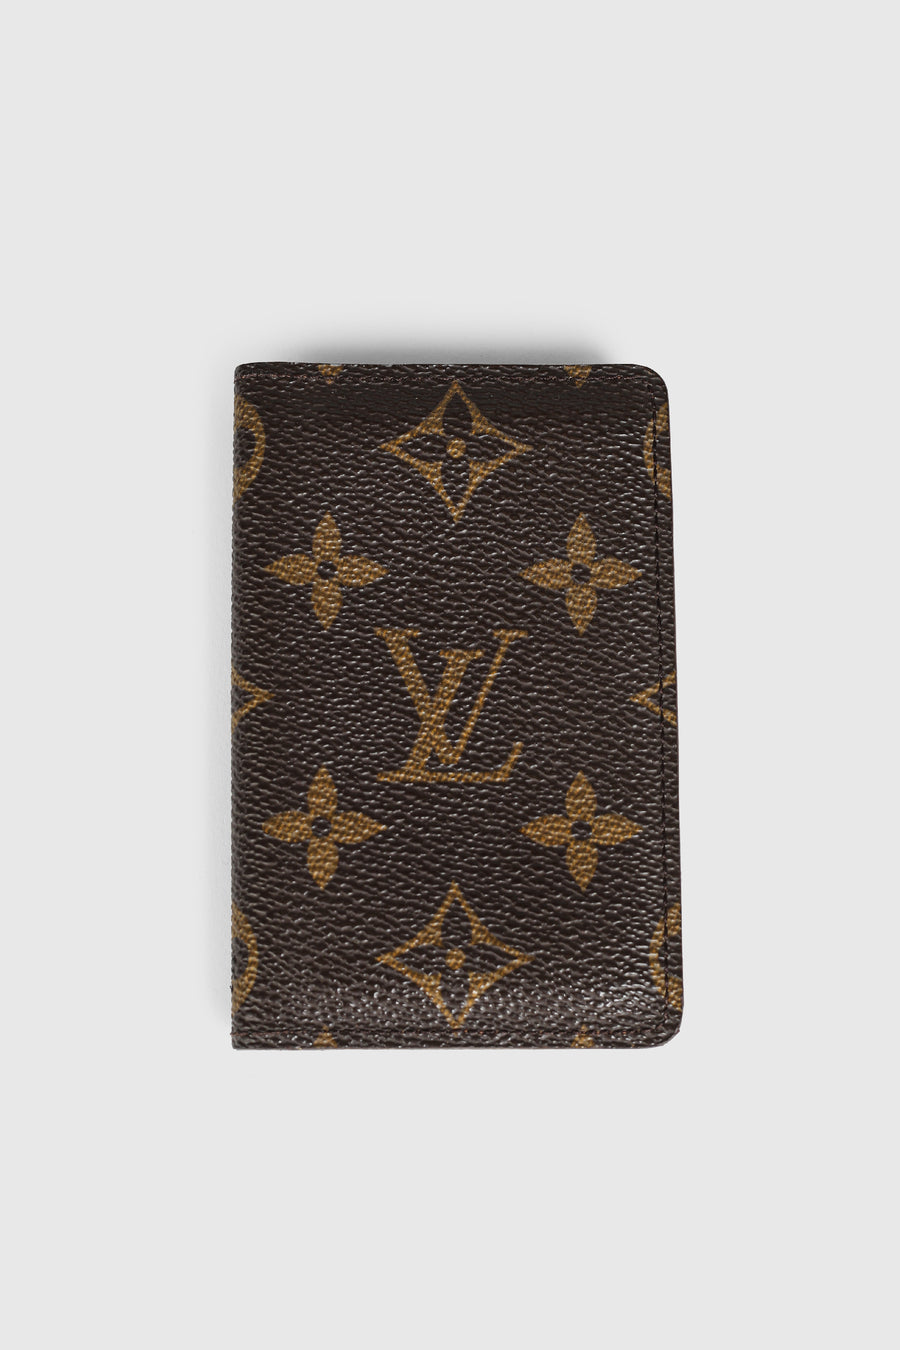 Vintage Louis Vuitton Cardholder